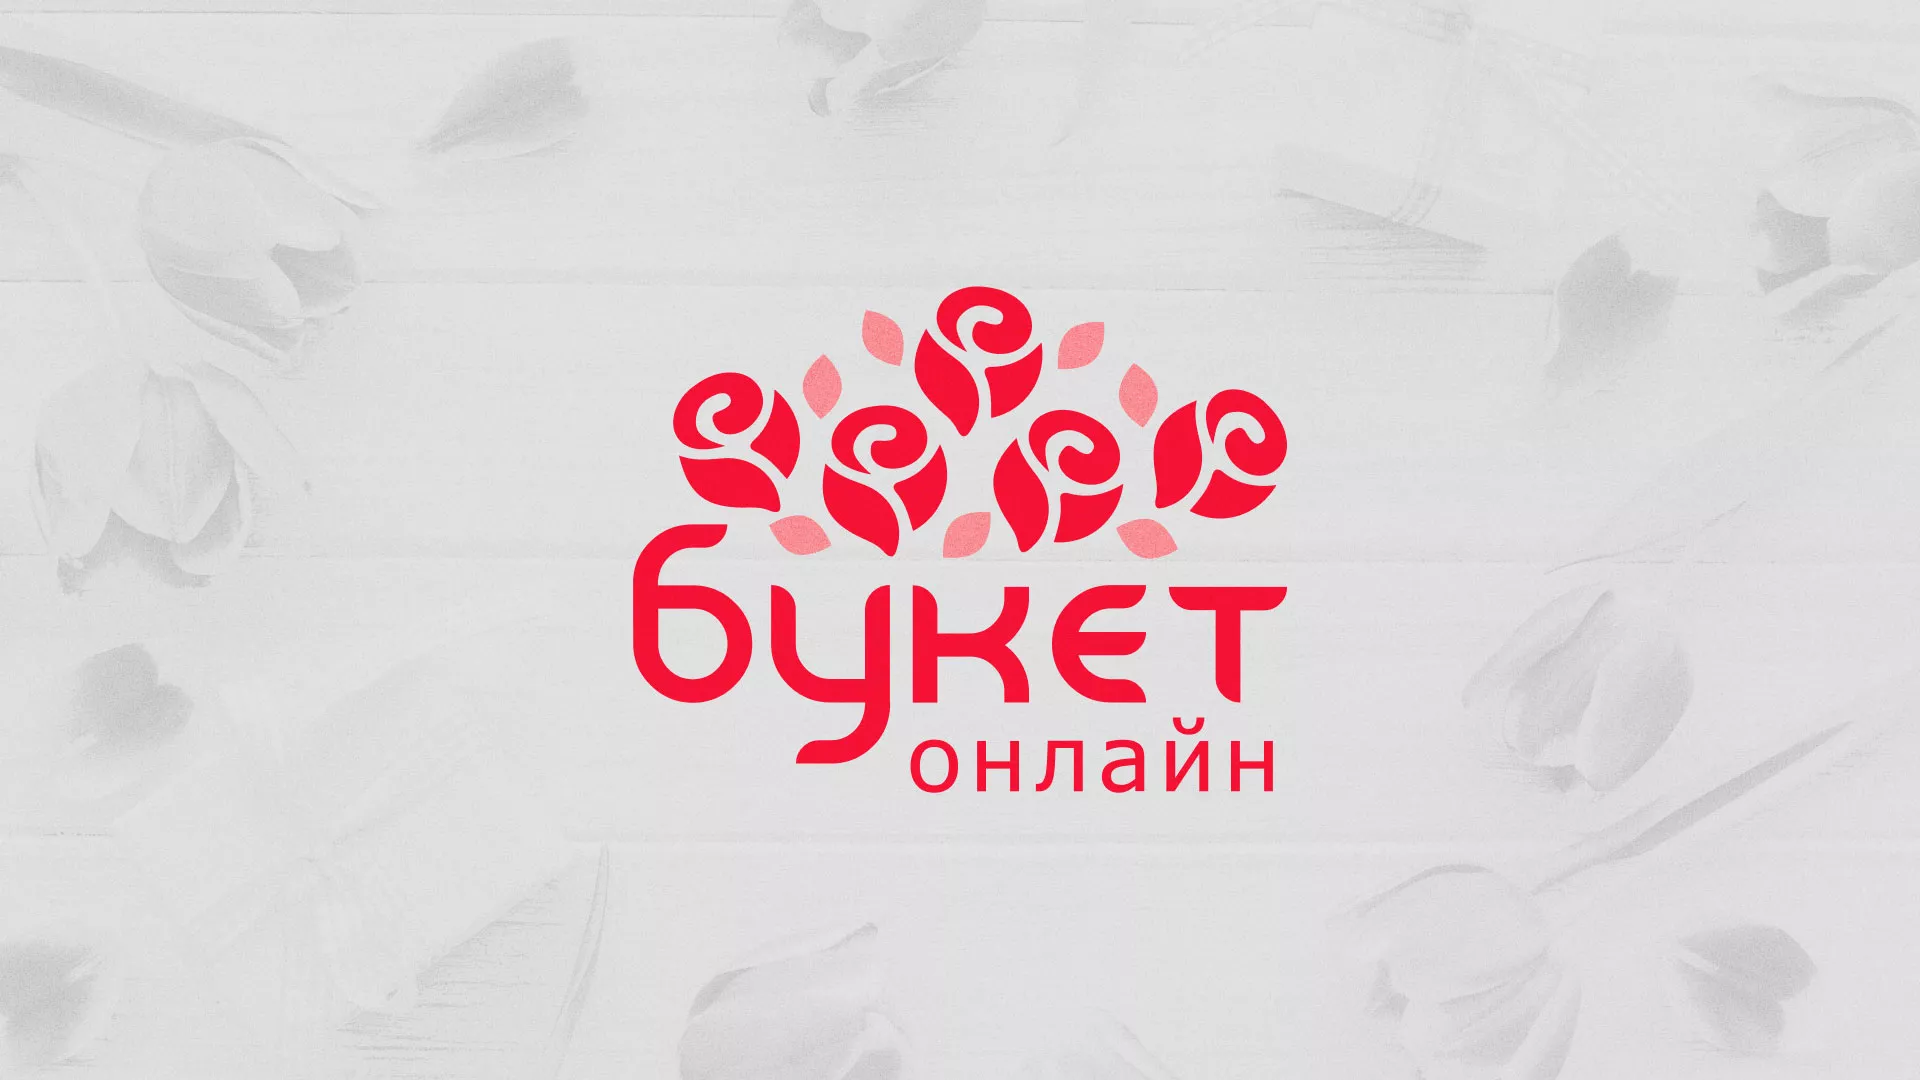 Создание интернет-магазина «Букет-онлайн» по цветам в Зернограде